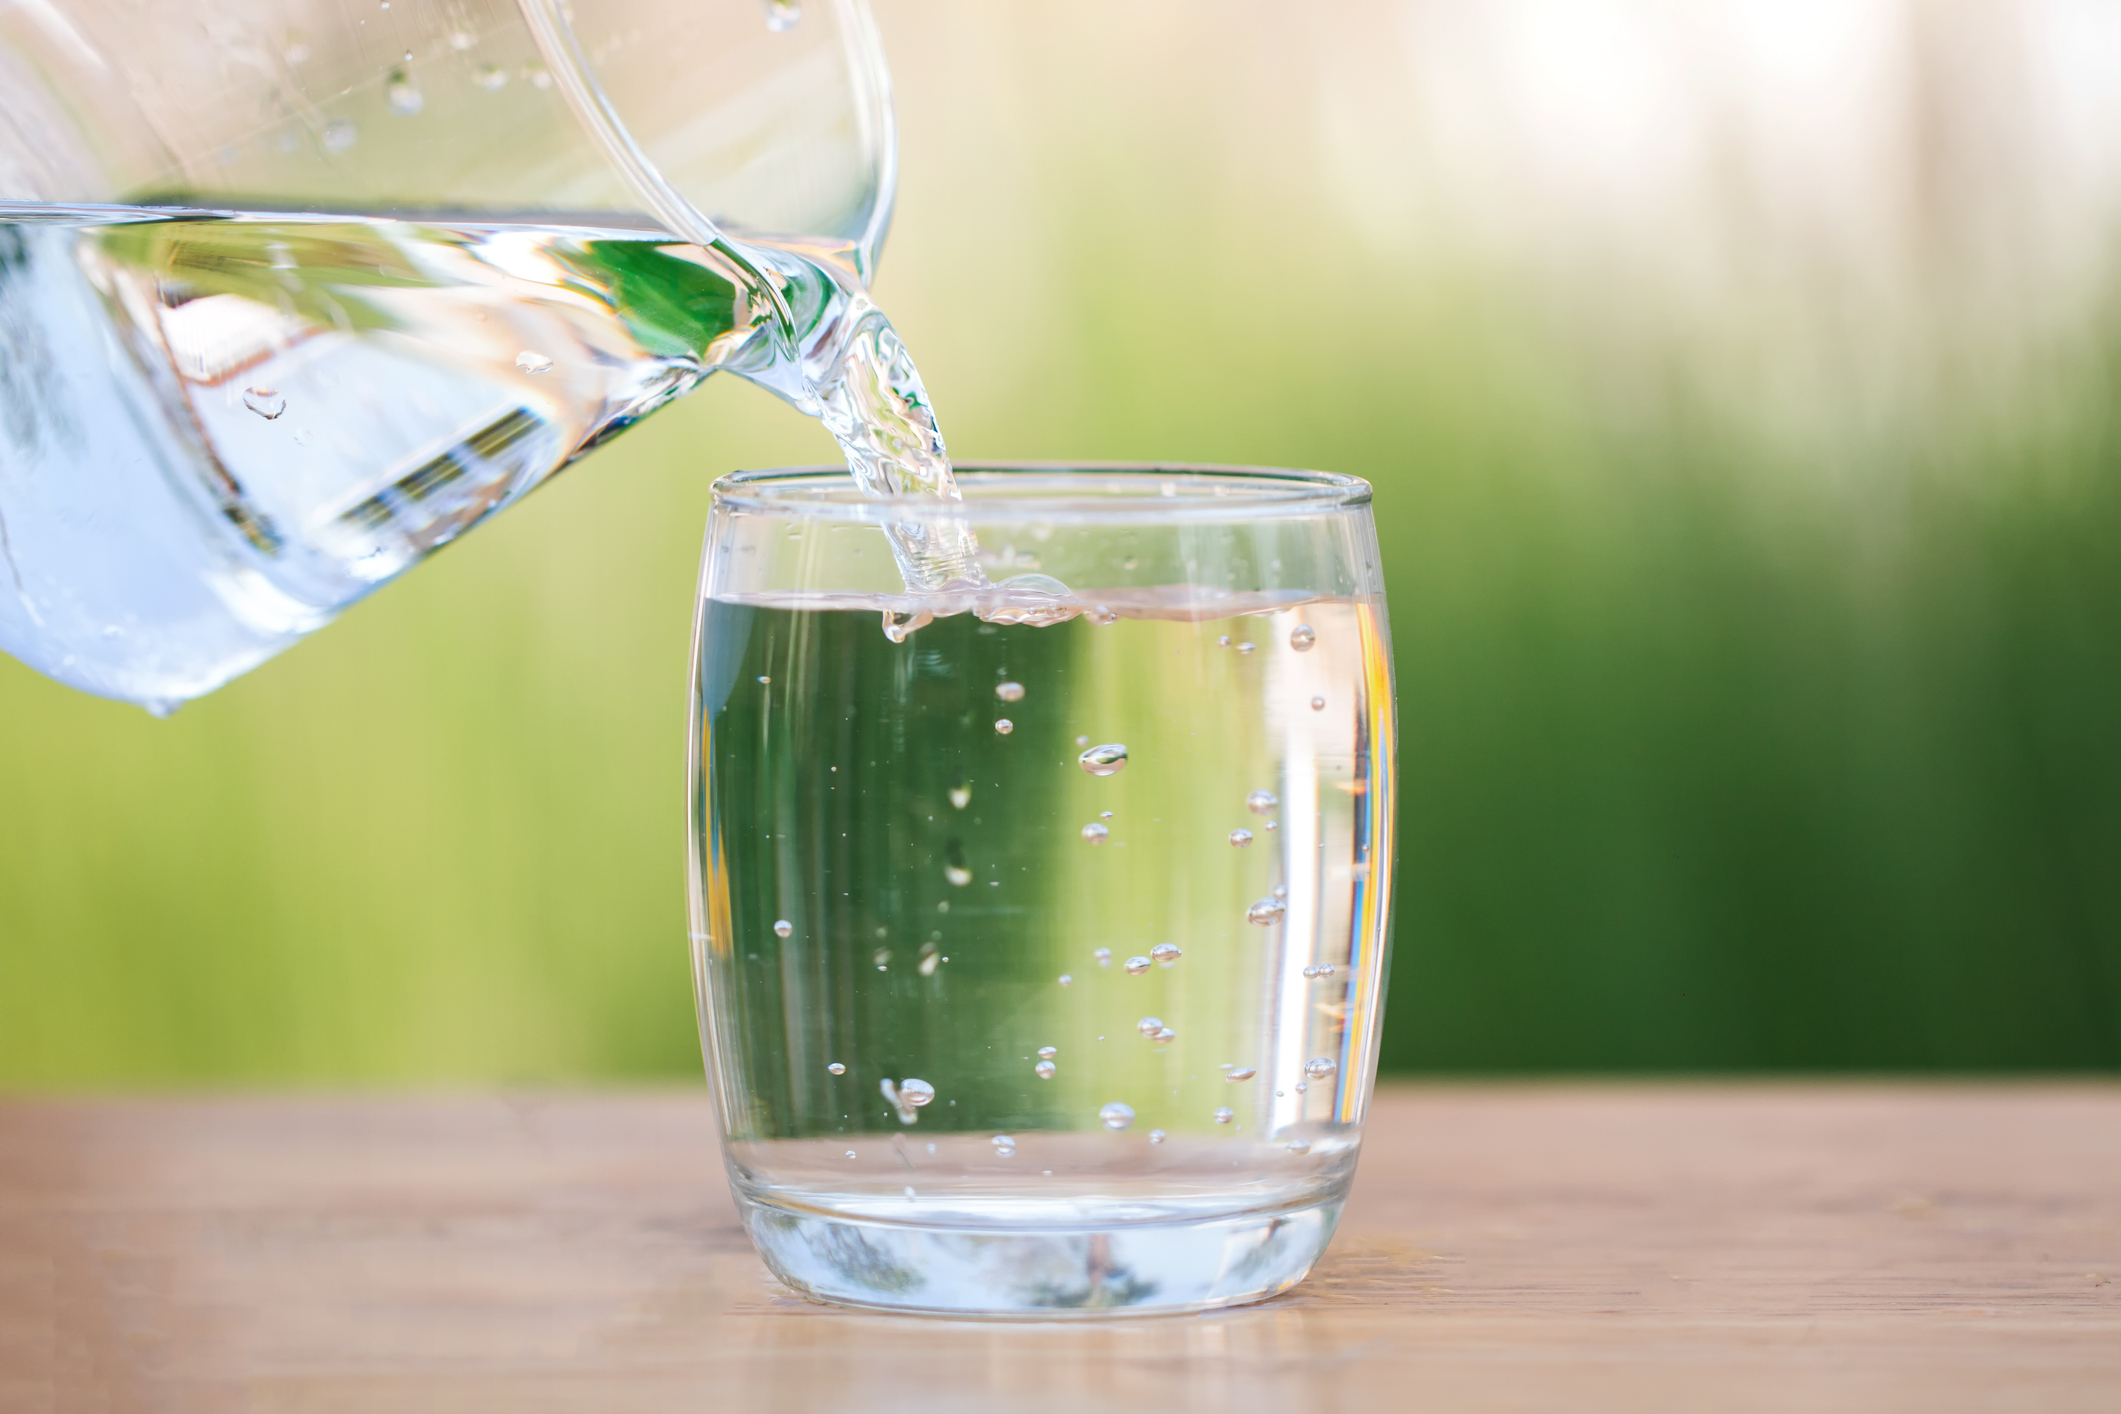 Cuál es la diferencia entre purificador y filtro de agua